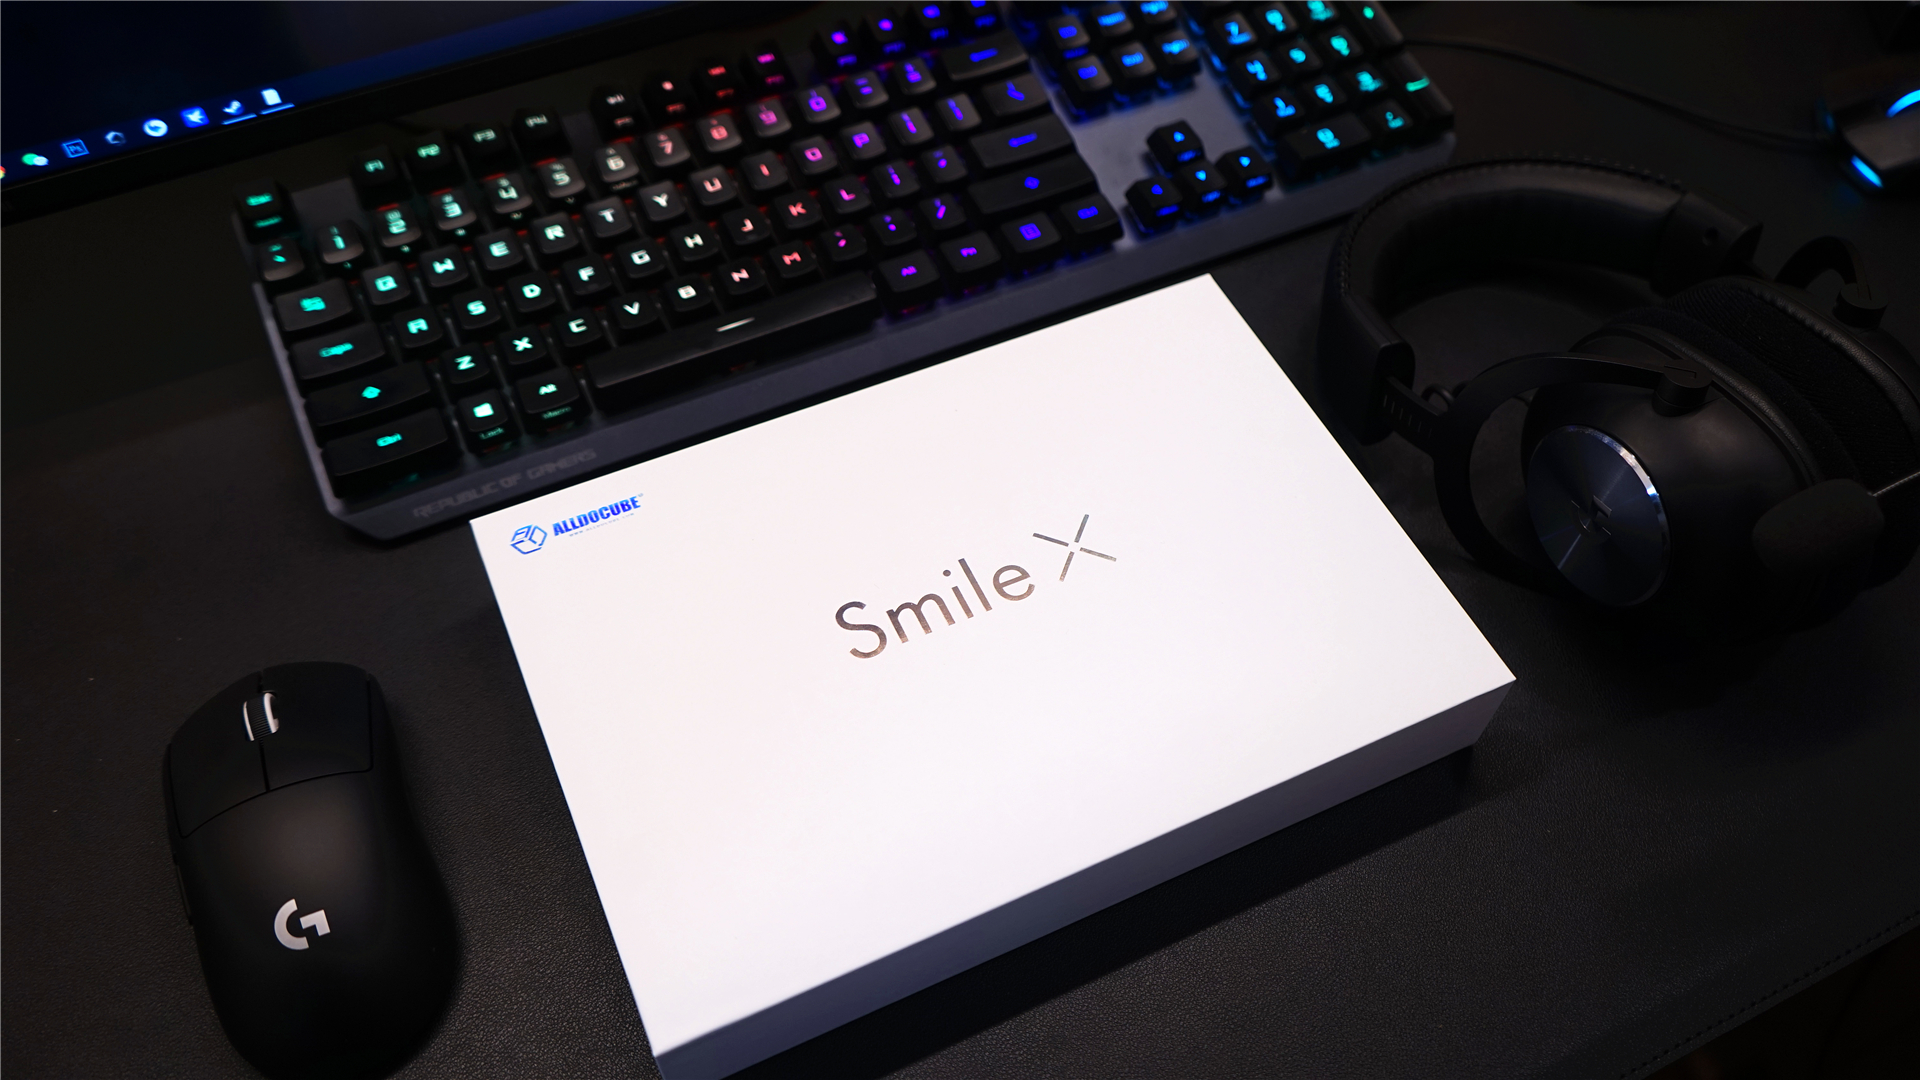 教育娱乐两不误——酷比魔方Smile X安卓平板使用体验